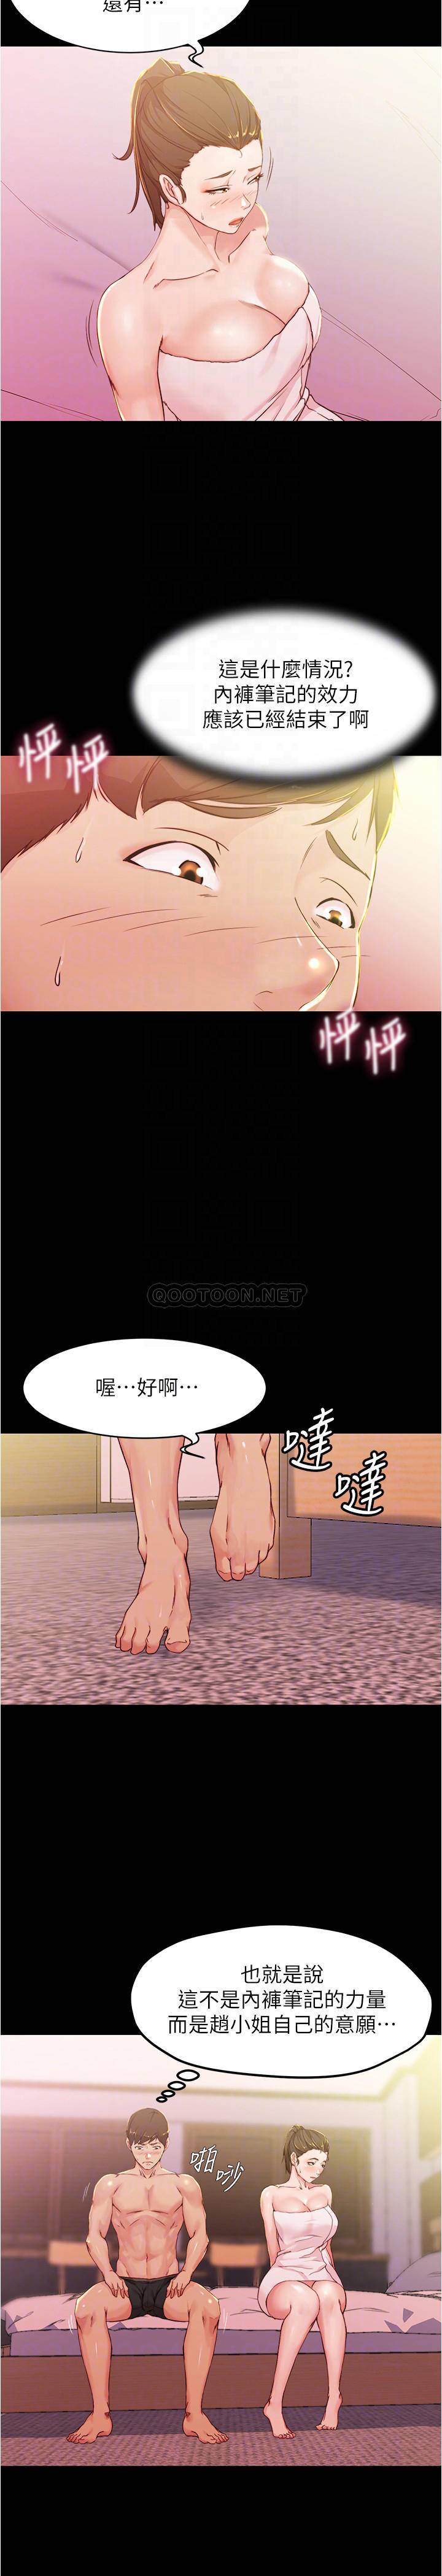 韩国污漫画 小褲褲筆記 第27话 - 秘密被穗桦发现? 4